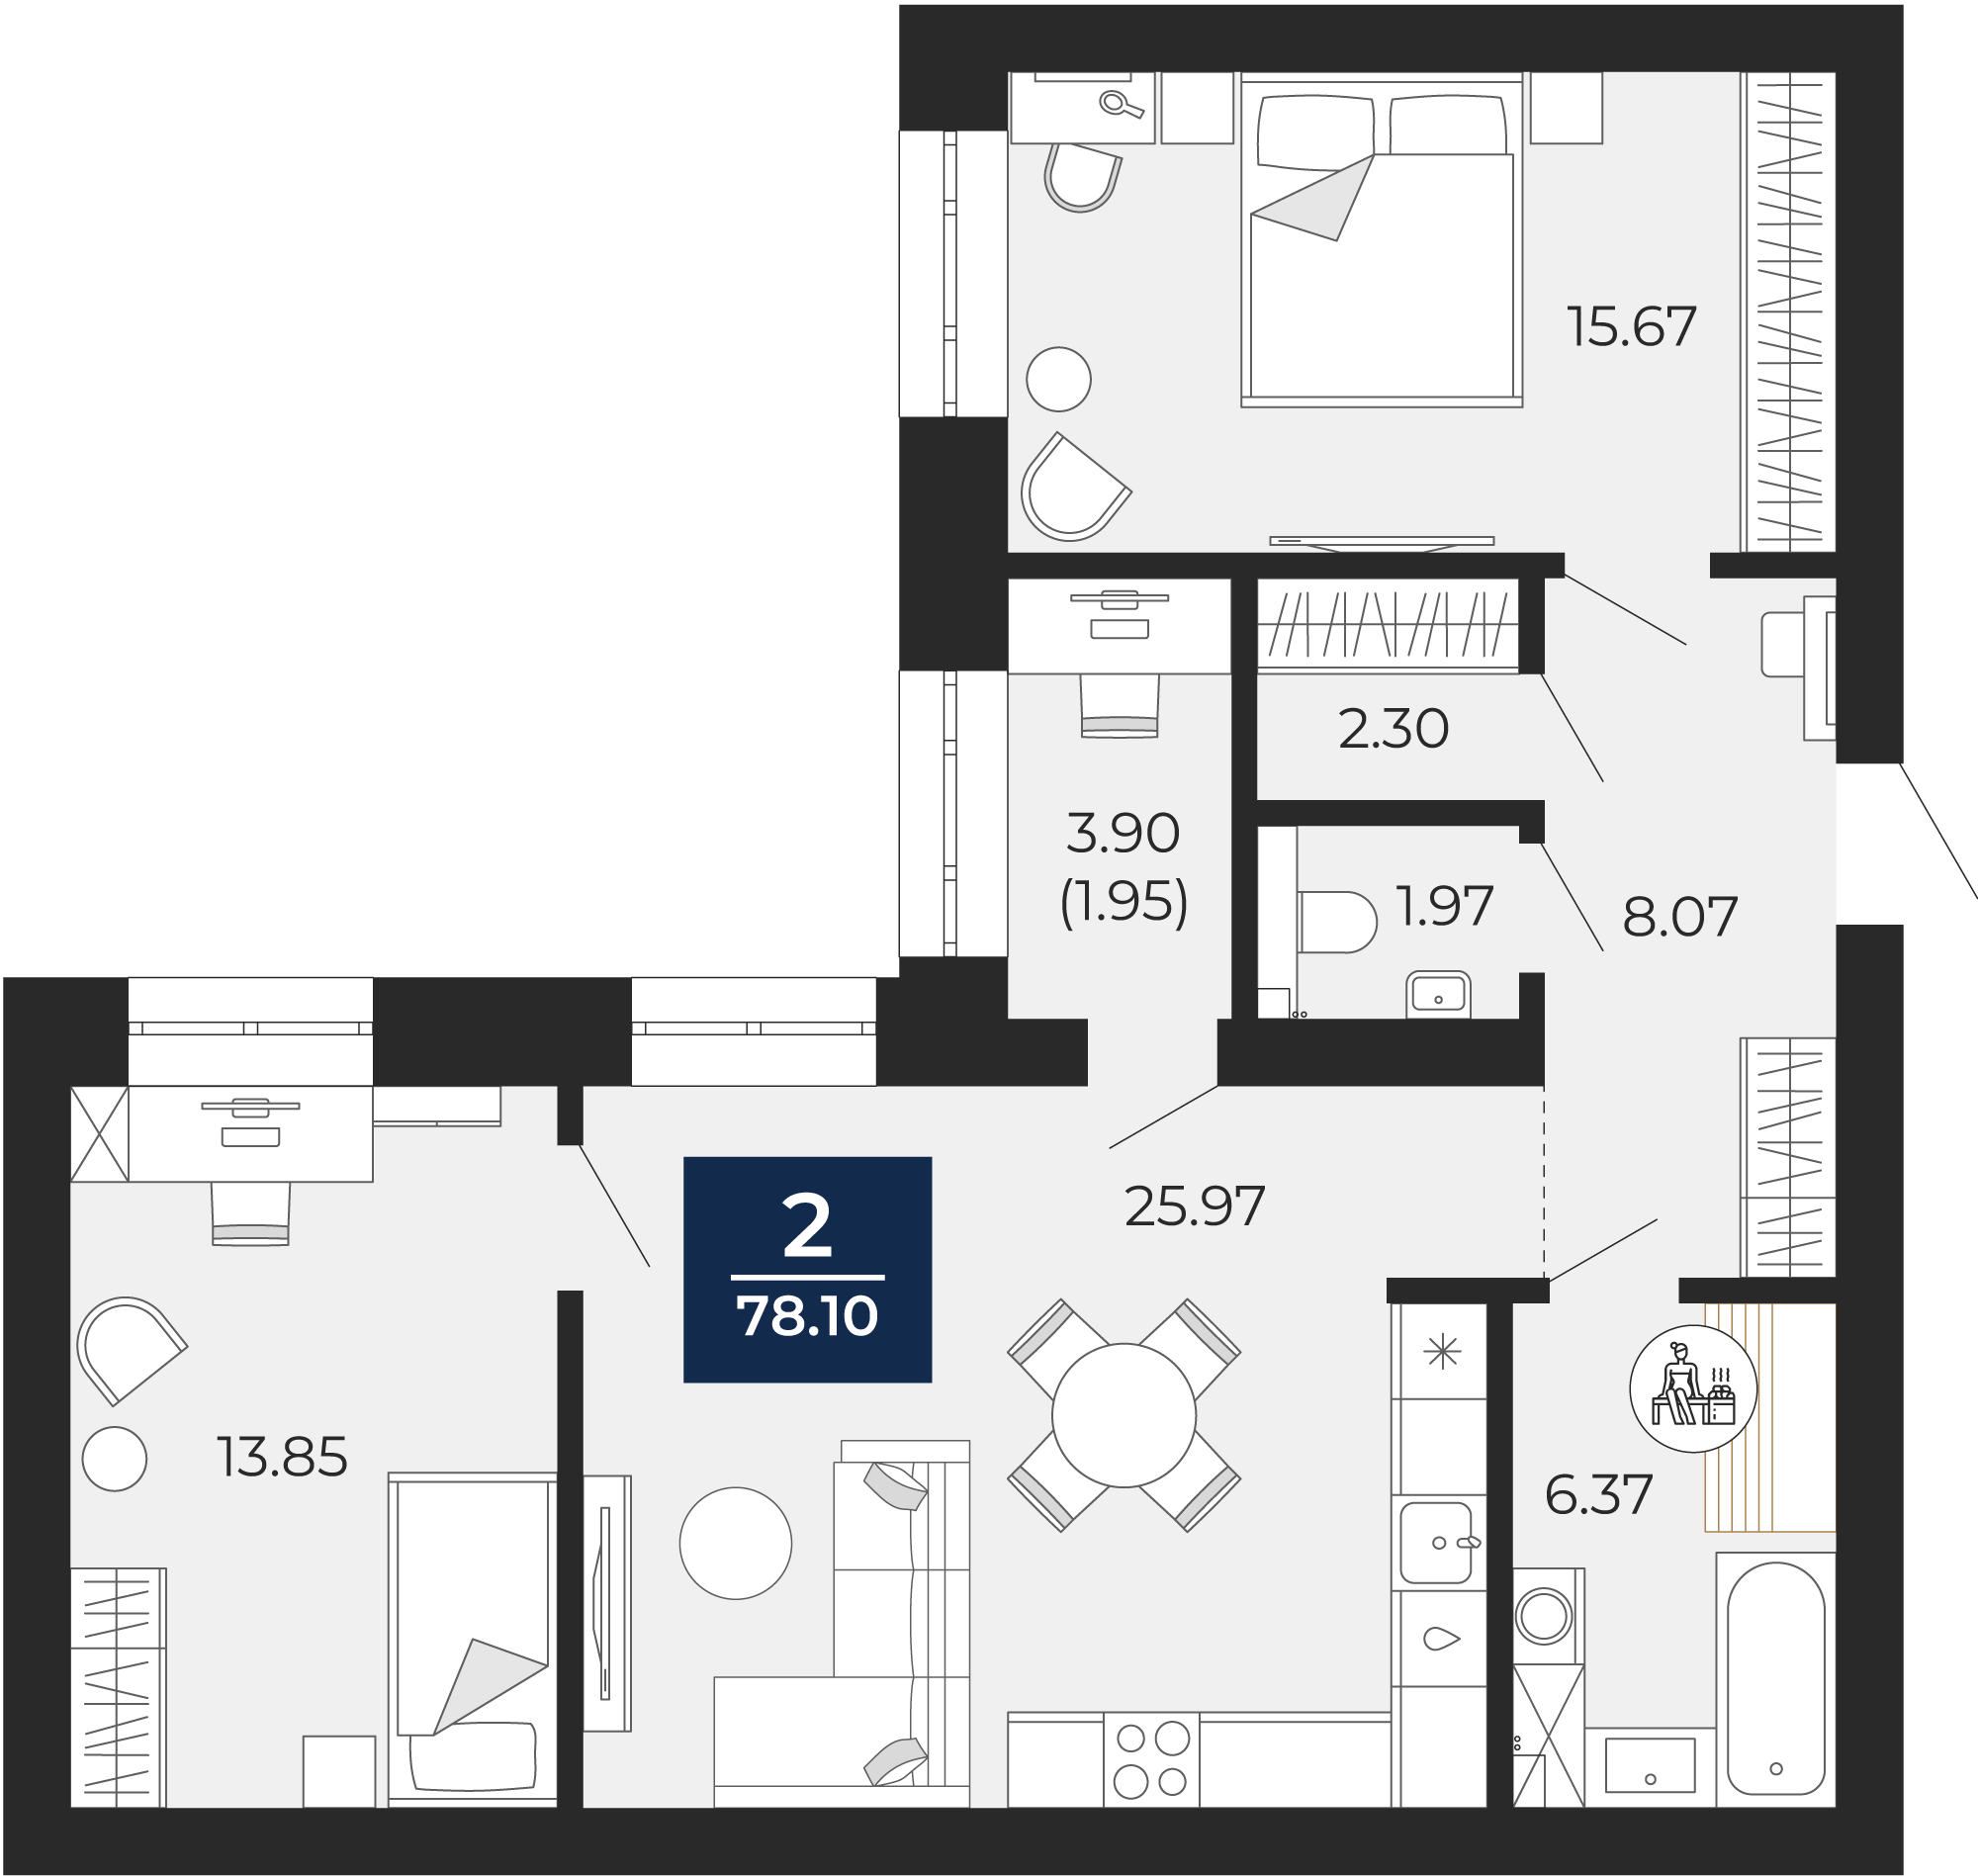 Квартира № 192, 2-комнатная, 78.1 кв. м, 12 этаж